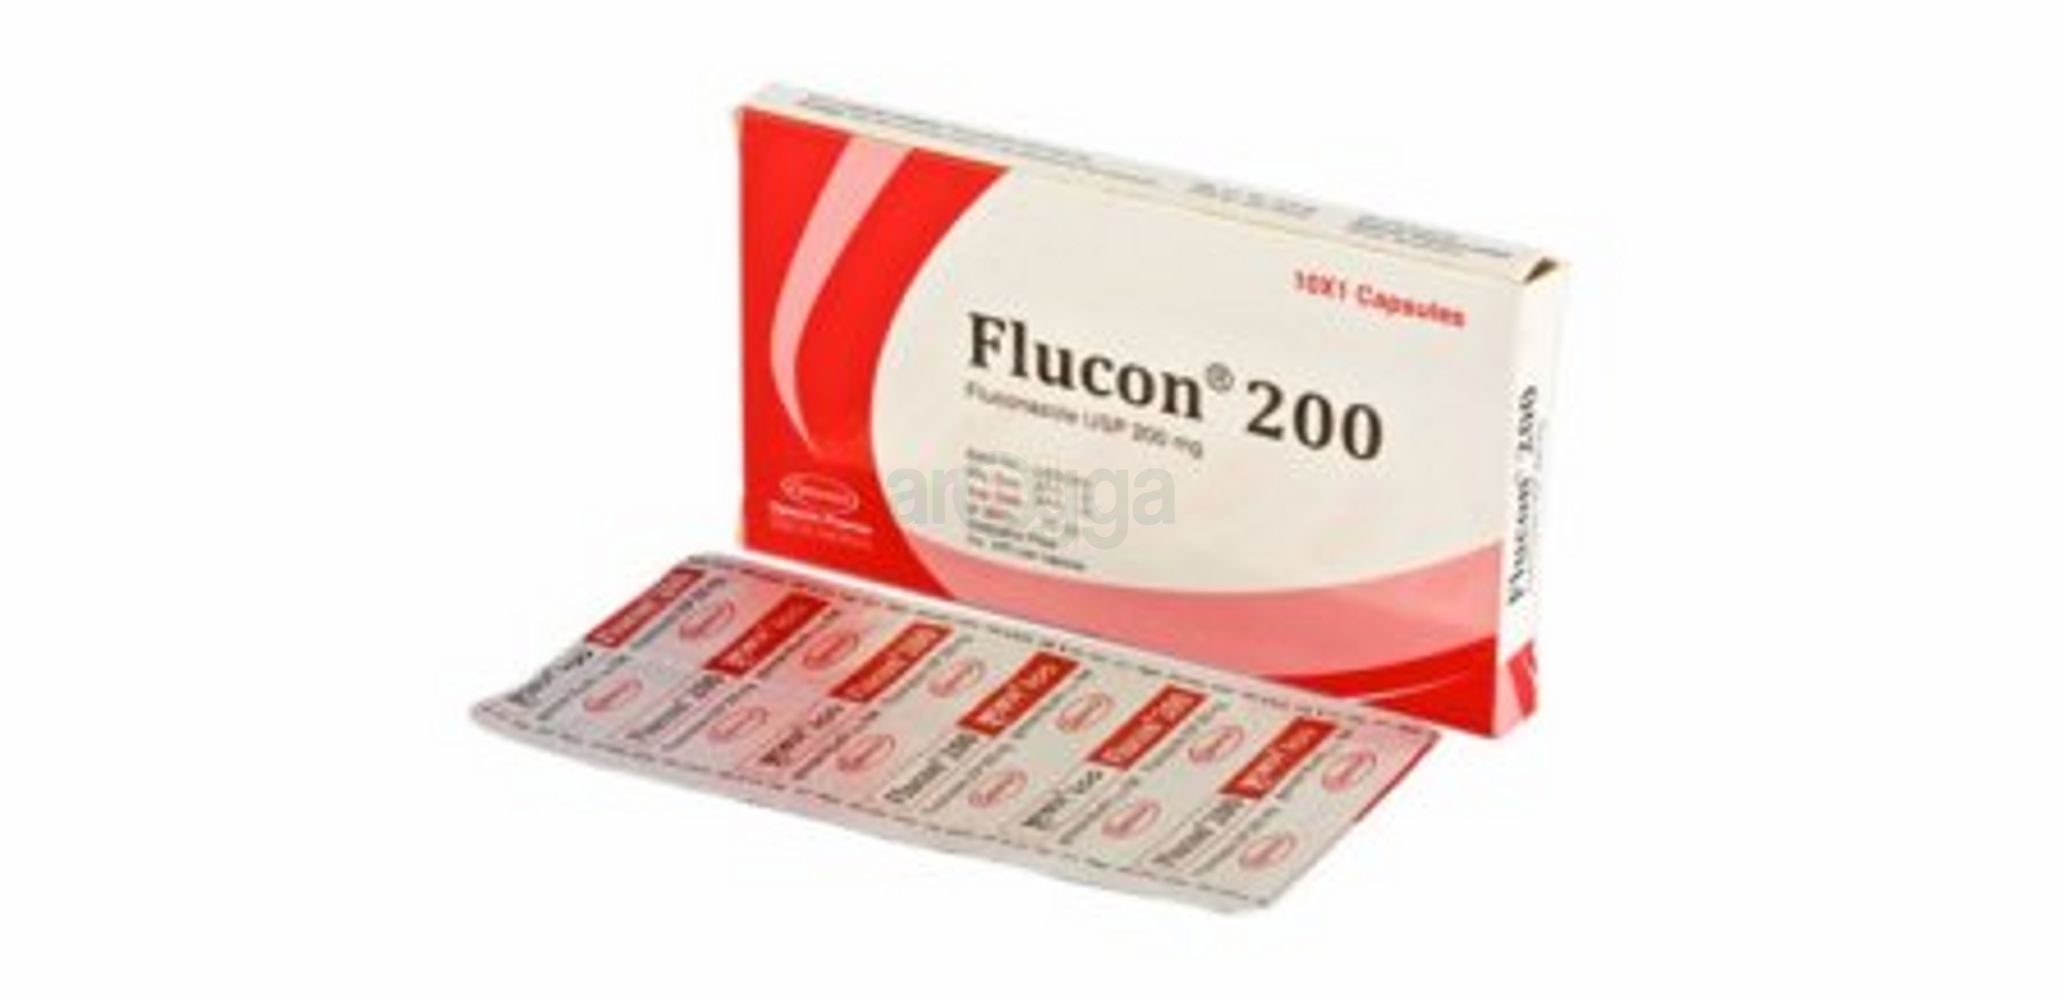 Flucon 200